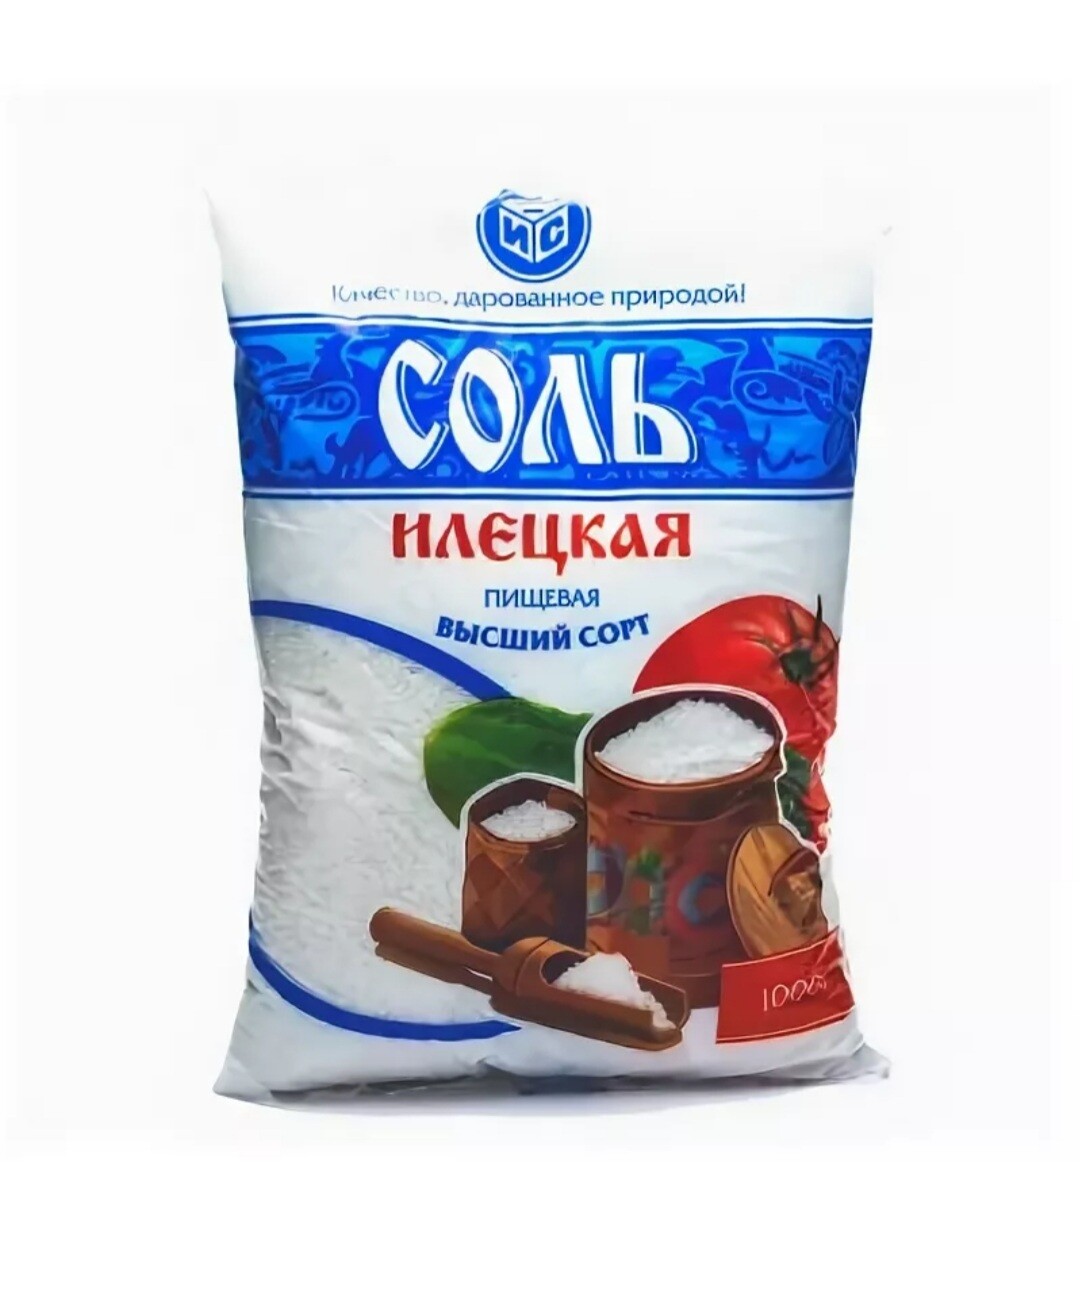 Где Купить Соль В Нижнем Новгороде